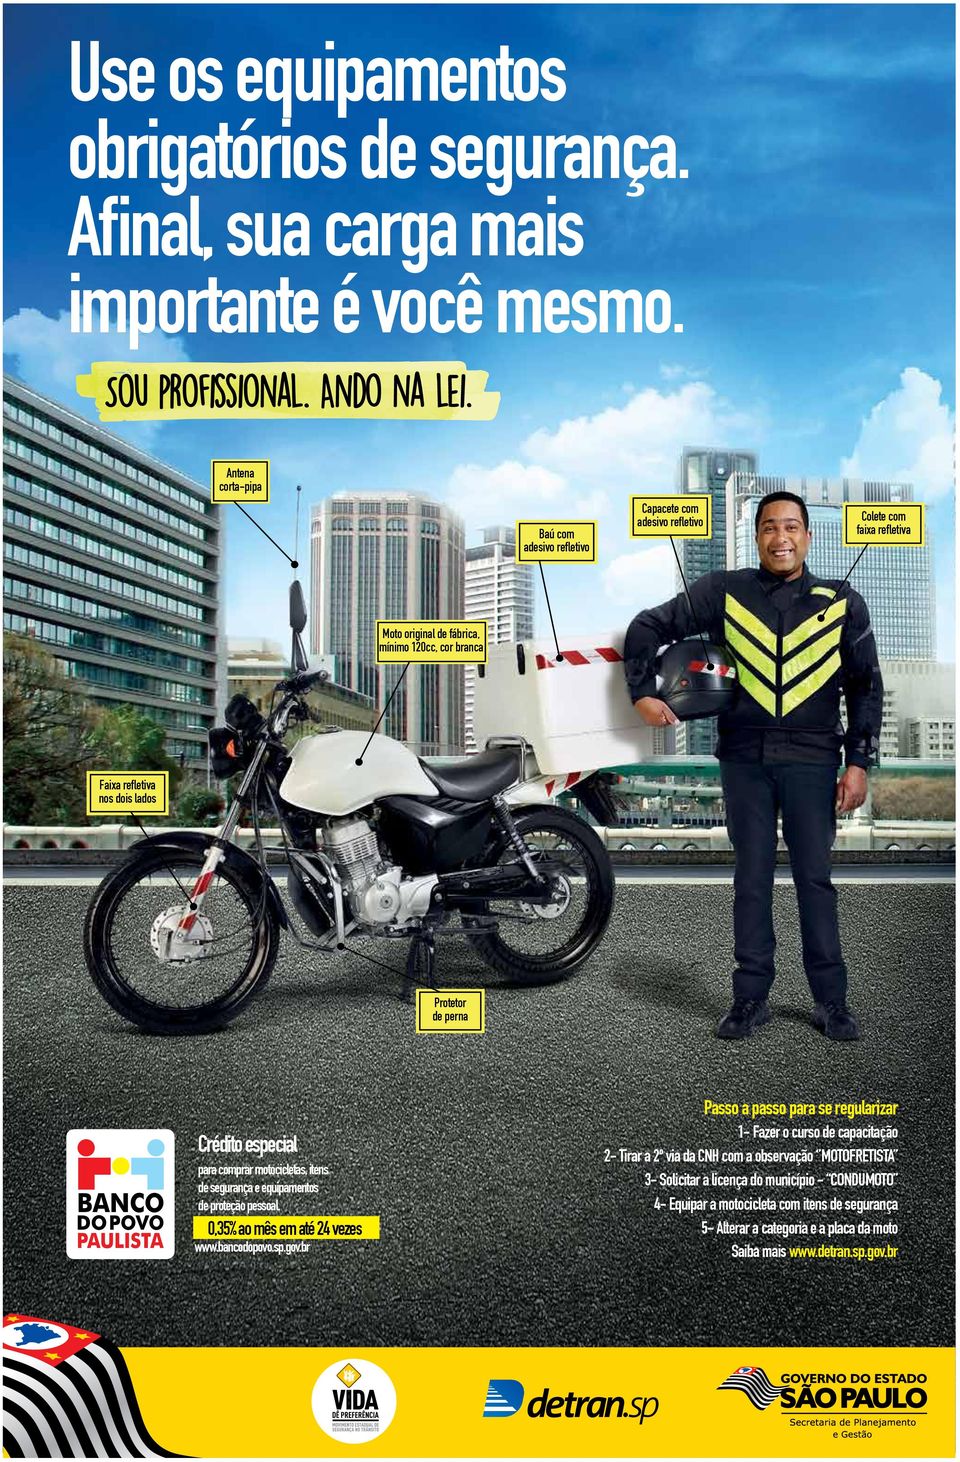 perna Crédito especial para comprar motocicletas, itens de segurança e equipamentos de proteção pessoal. 0,35% ao mês em até 24 vezes www.bancodopovo.sp.gov.